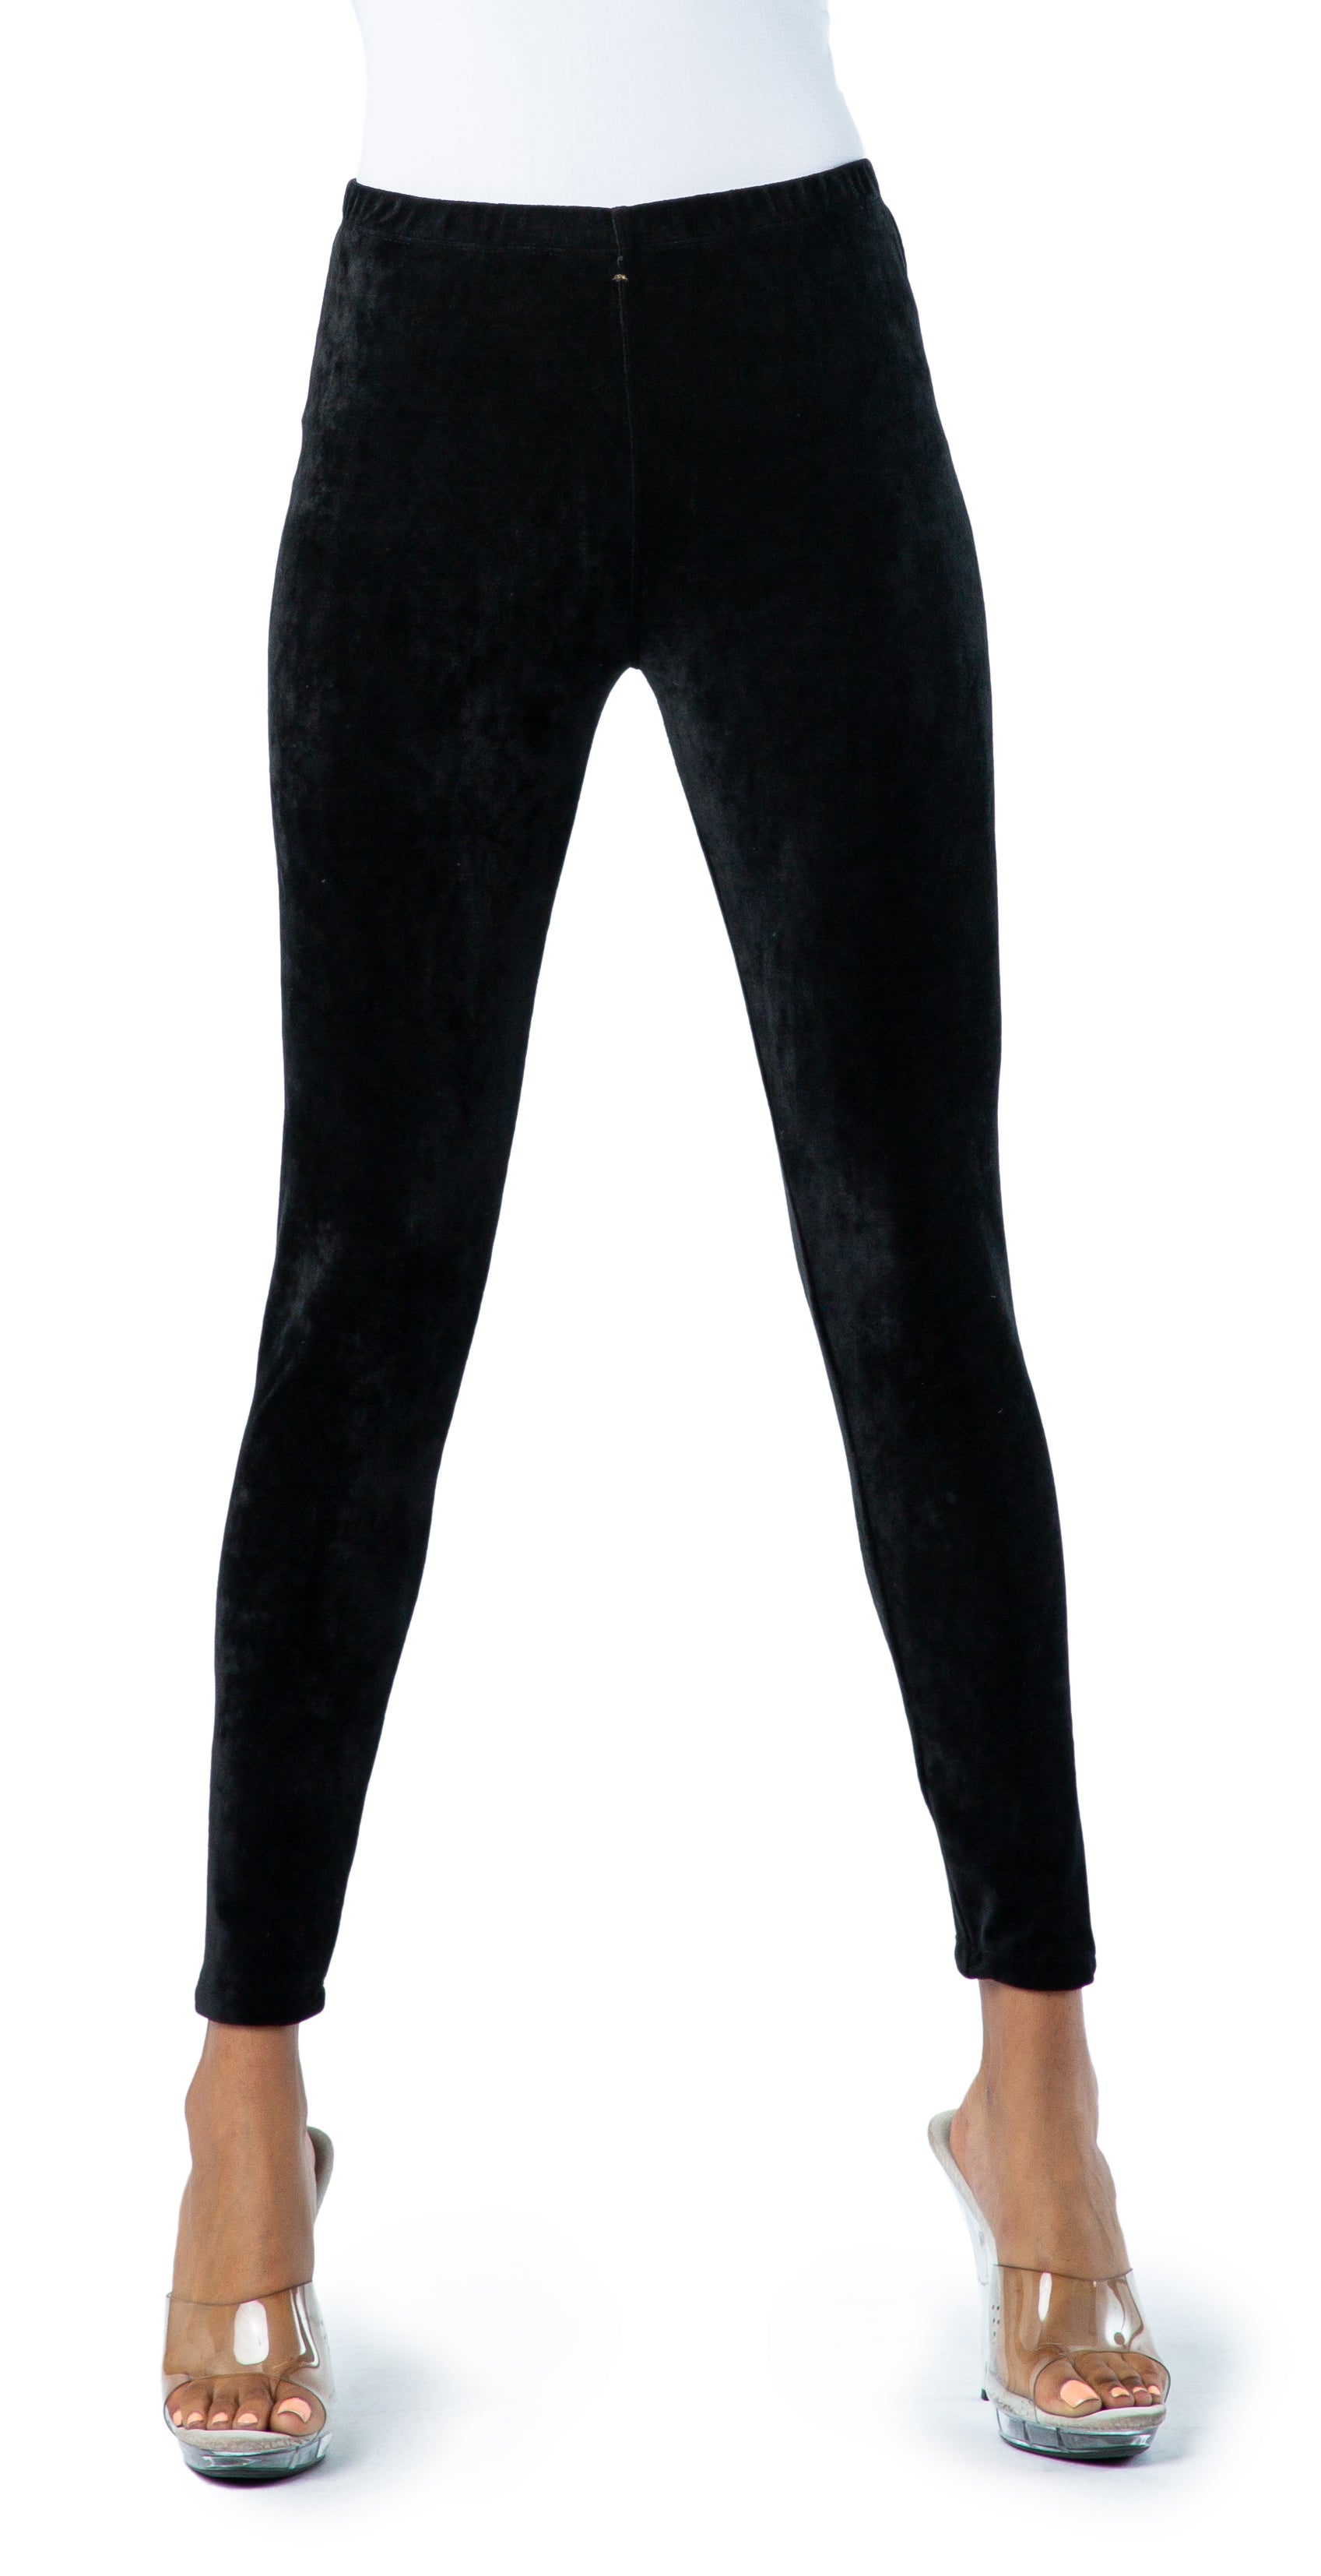 Festive Black Straight Velvet Kurti with Black Leggings at Rs 3599.00 |  Designer Kurtis | ID: 2853567173548